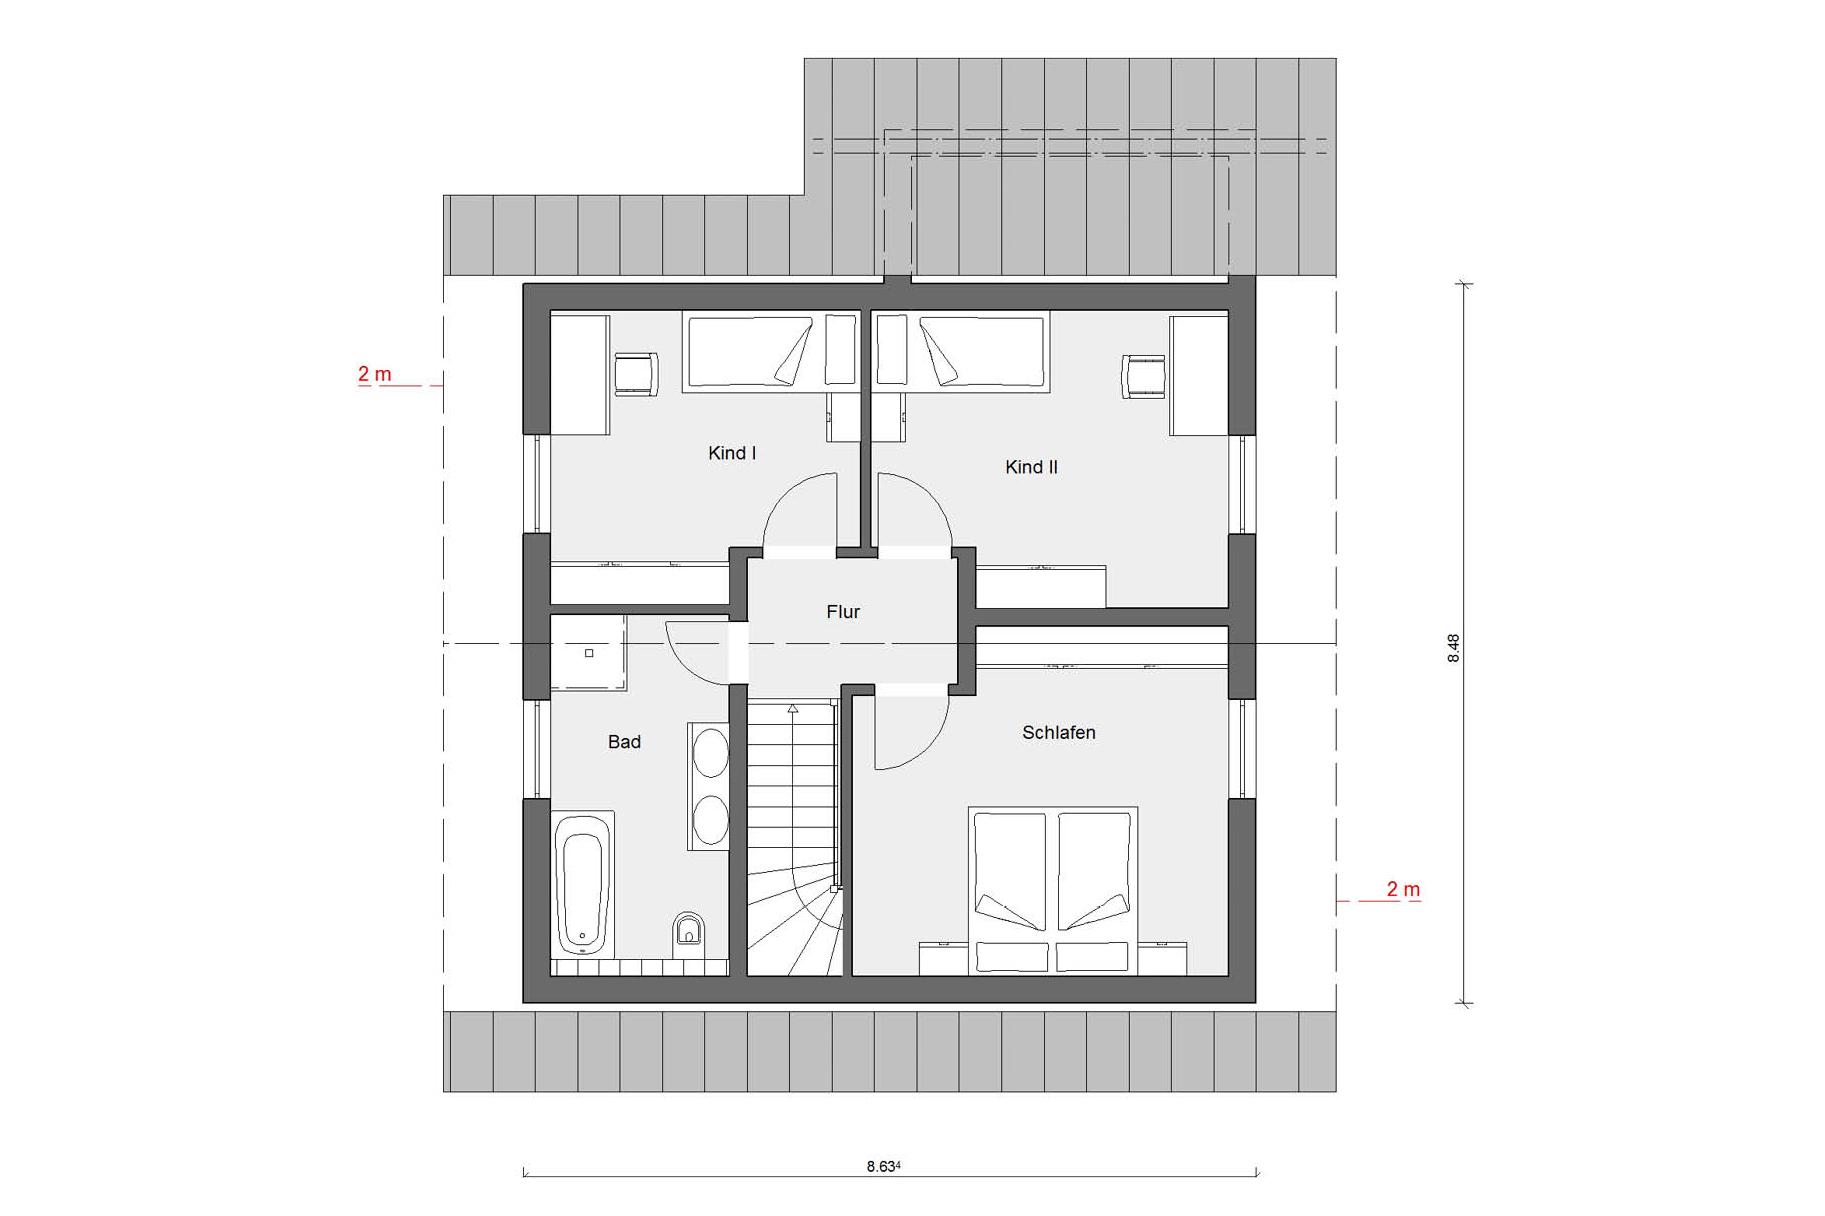 Attic floor plan E 15-126.7 Attractive architecture